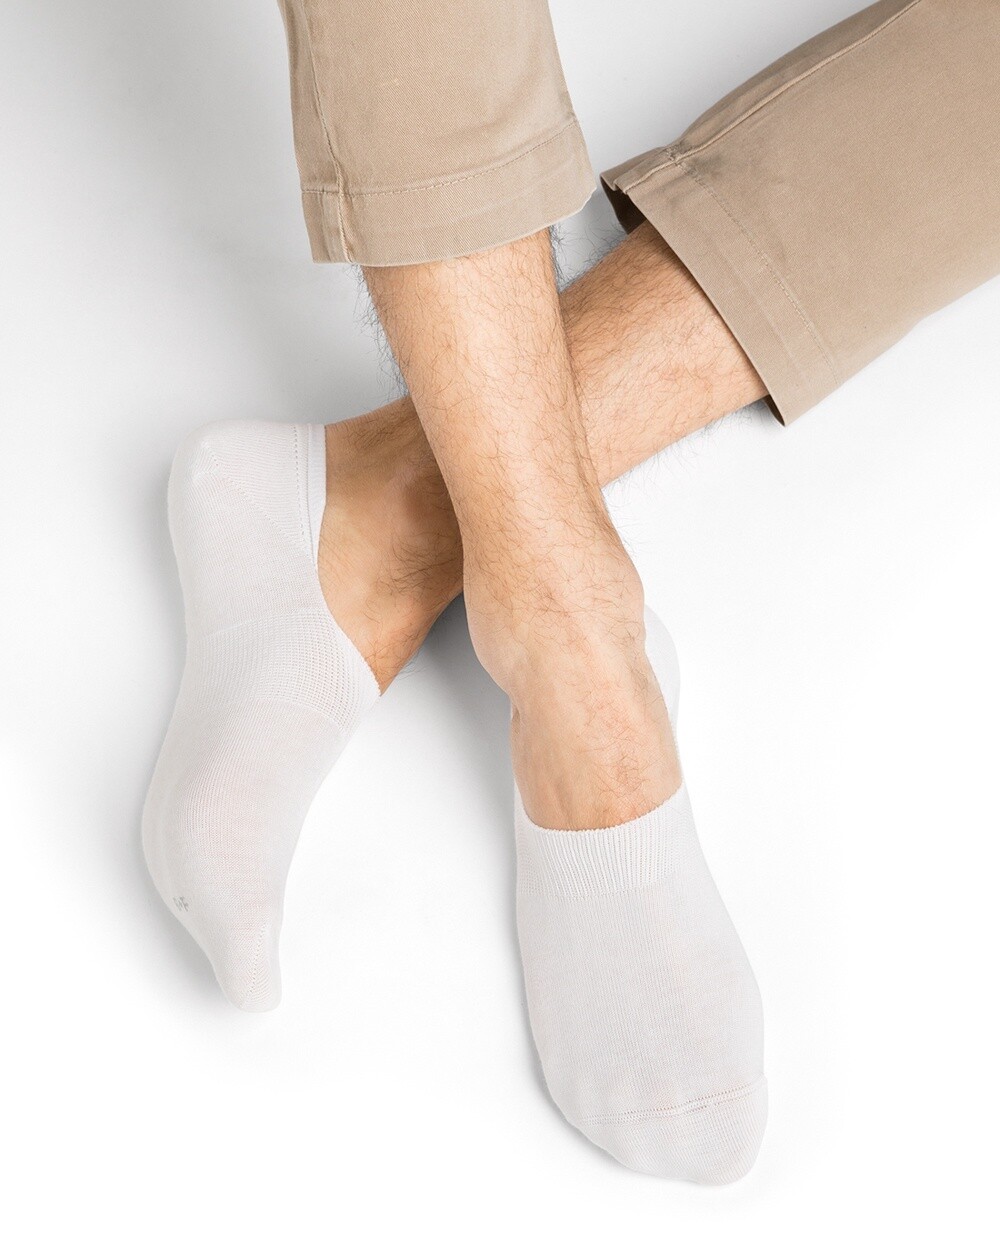 Duo chaussettes invisbles (H) (2 couleurs), Couleur: Blanc, Taille: 39/42 - 5/8 1/2